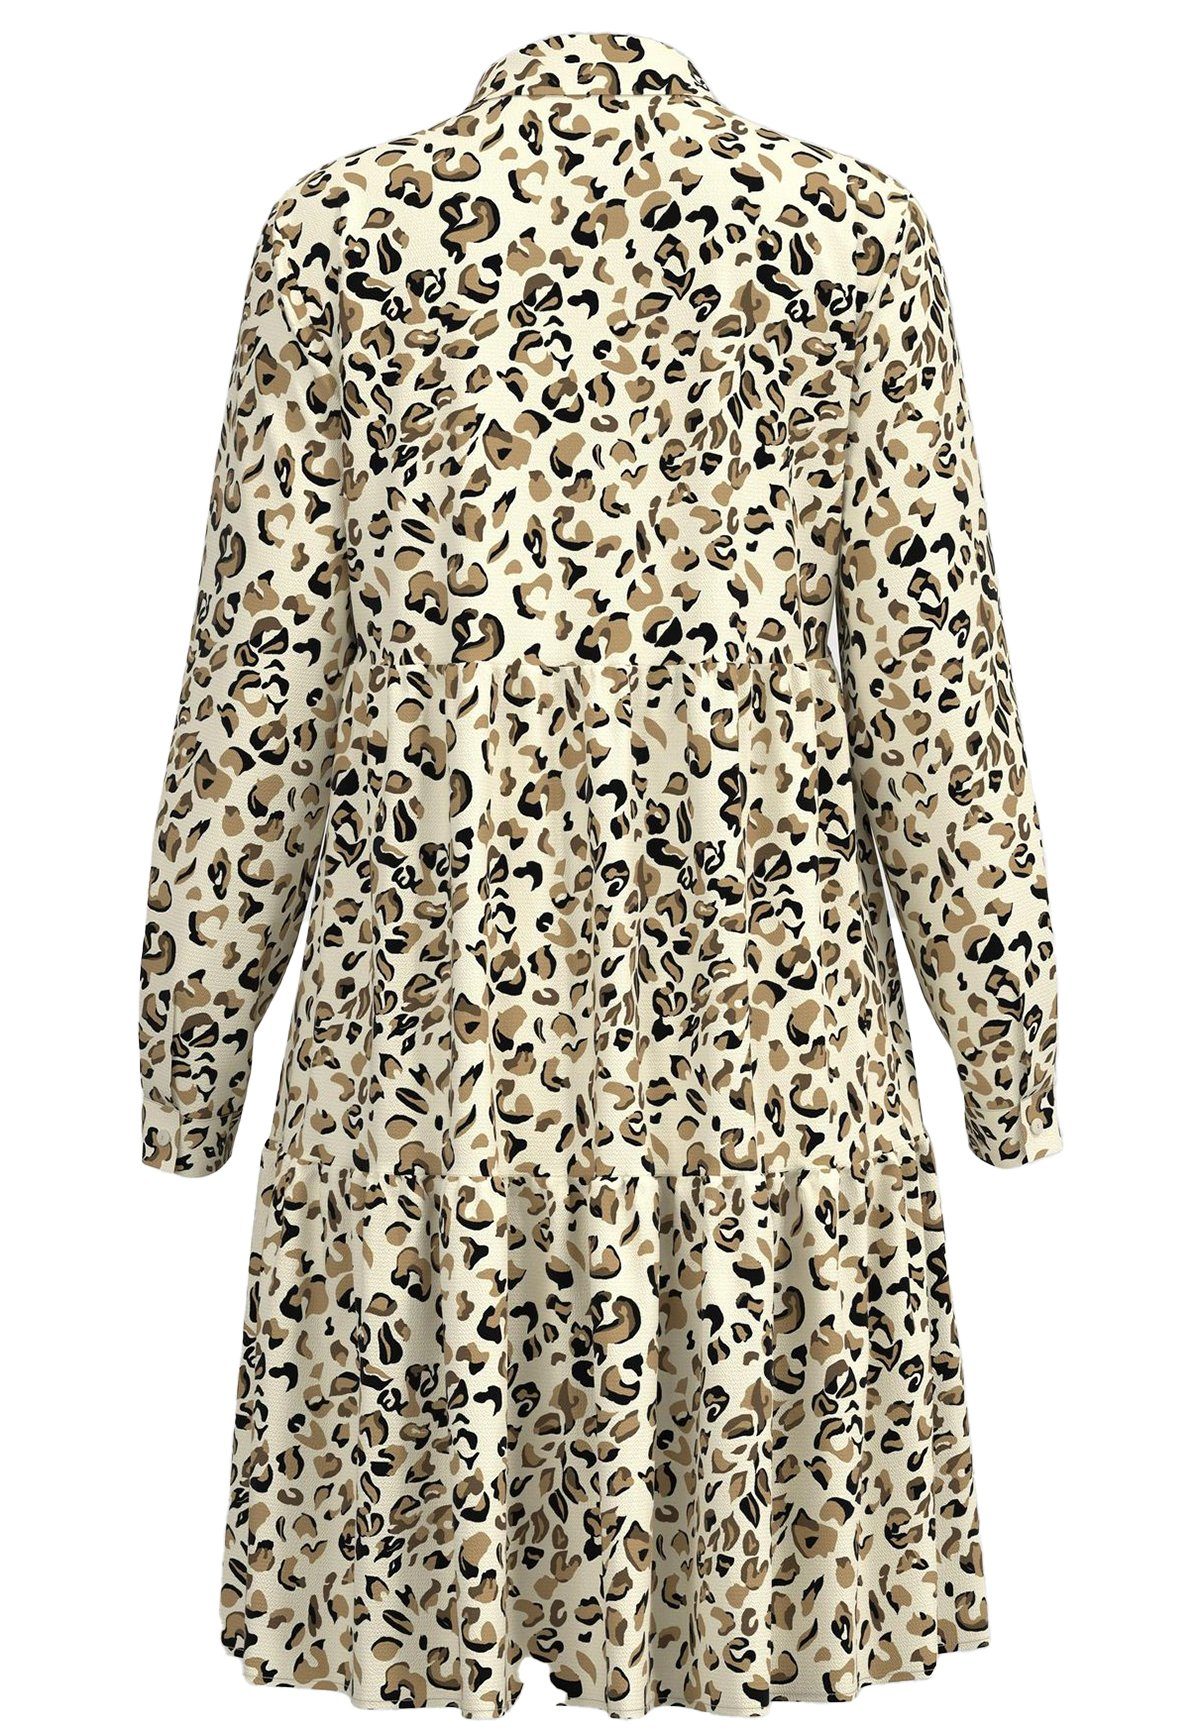 JACQUELINE de YONG Shirtkleid Kurzes Kleid Langarm in Gemusterte (lang) JDYPIPER Camel Bluse Tunika 4536